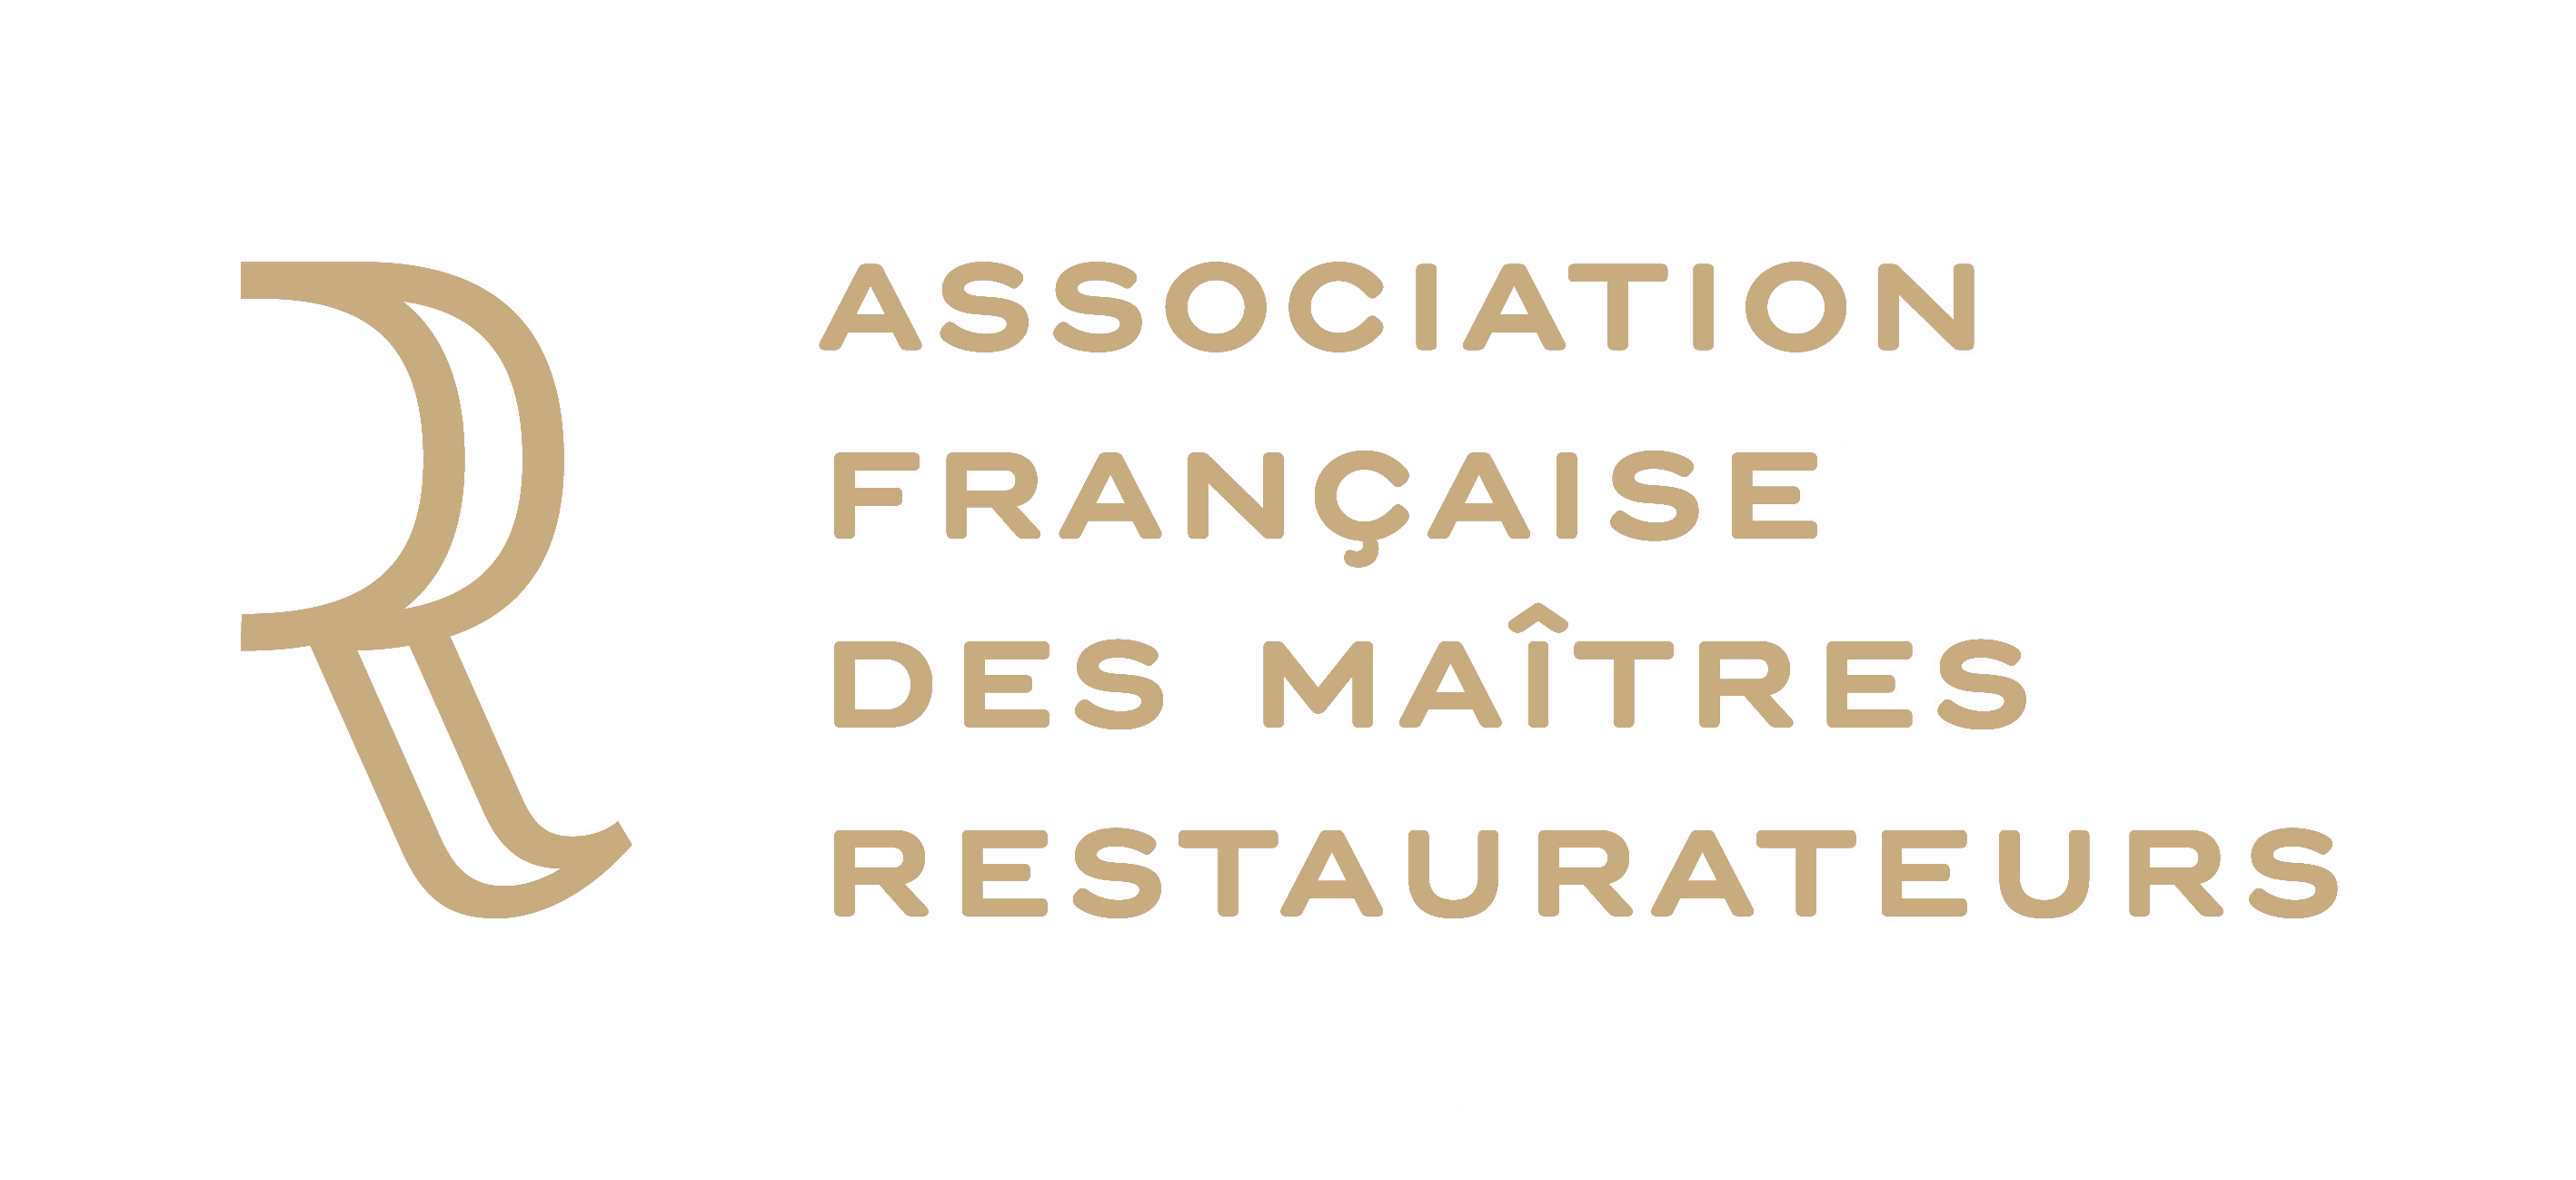 Association française des maitres restaurateurs 2